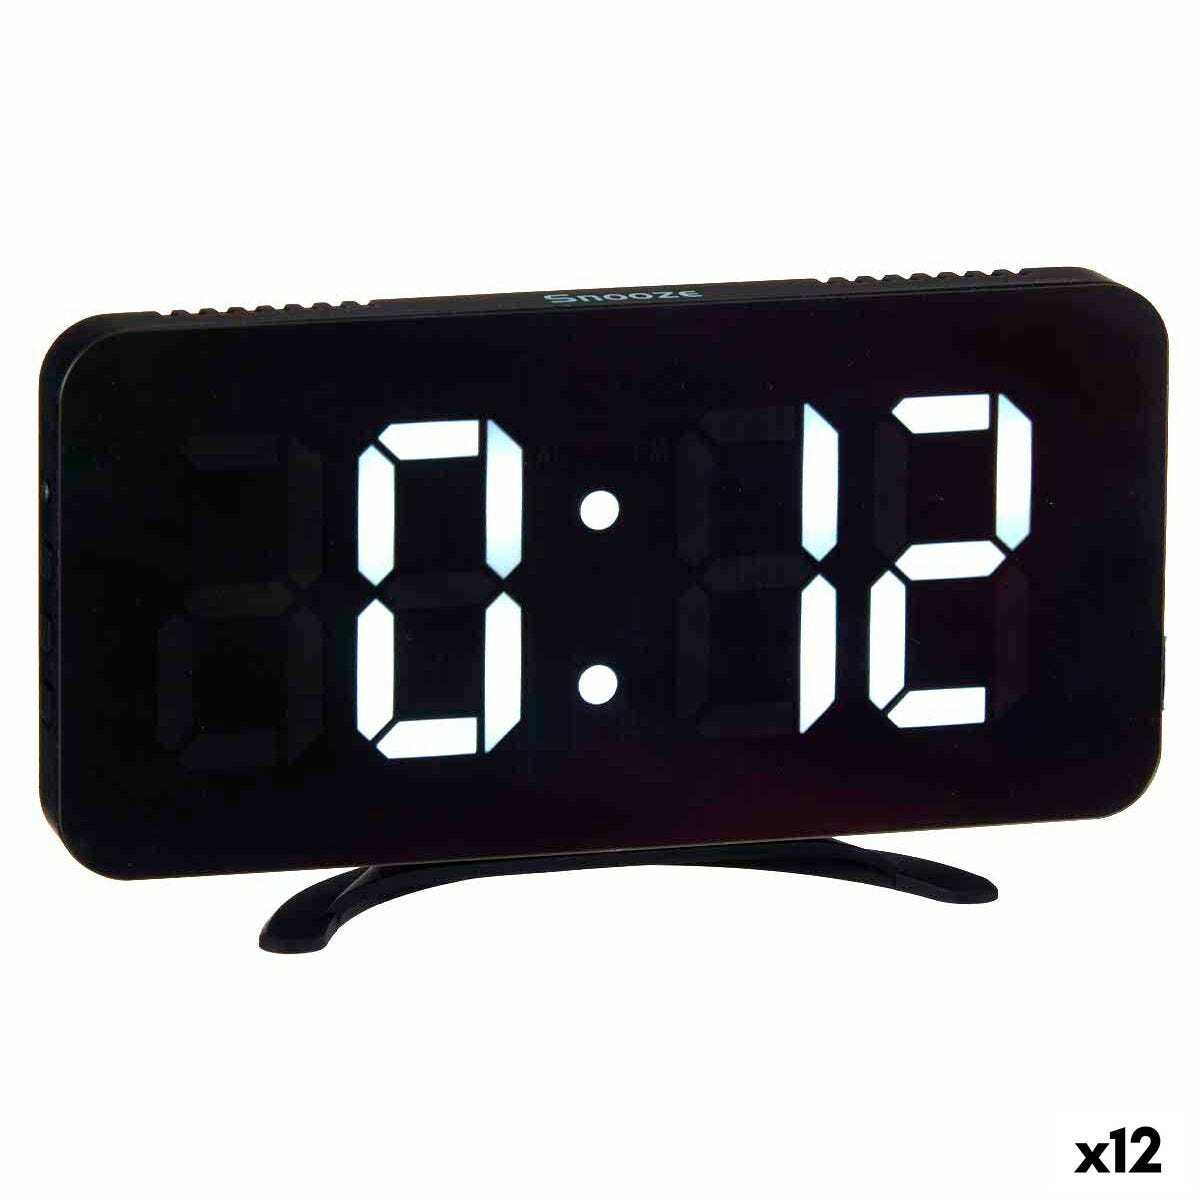 Orologio Digitale da Tavolo Nero ABS 15,7 x 7,7 x 1,5 cm (12 Unità)